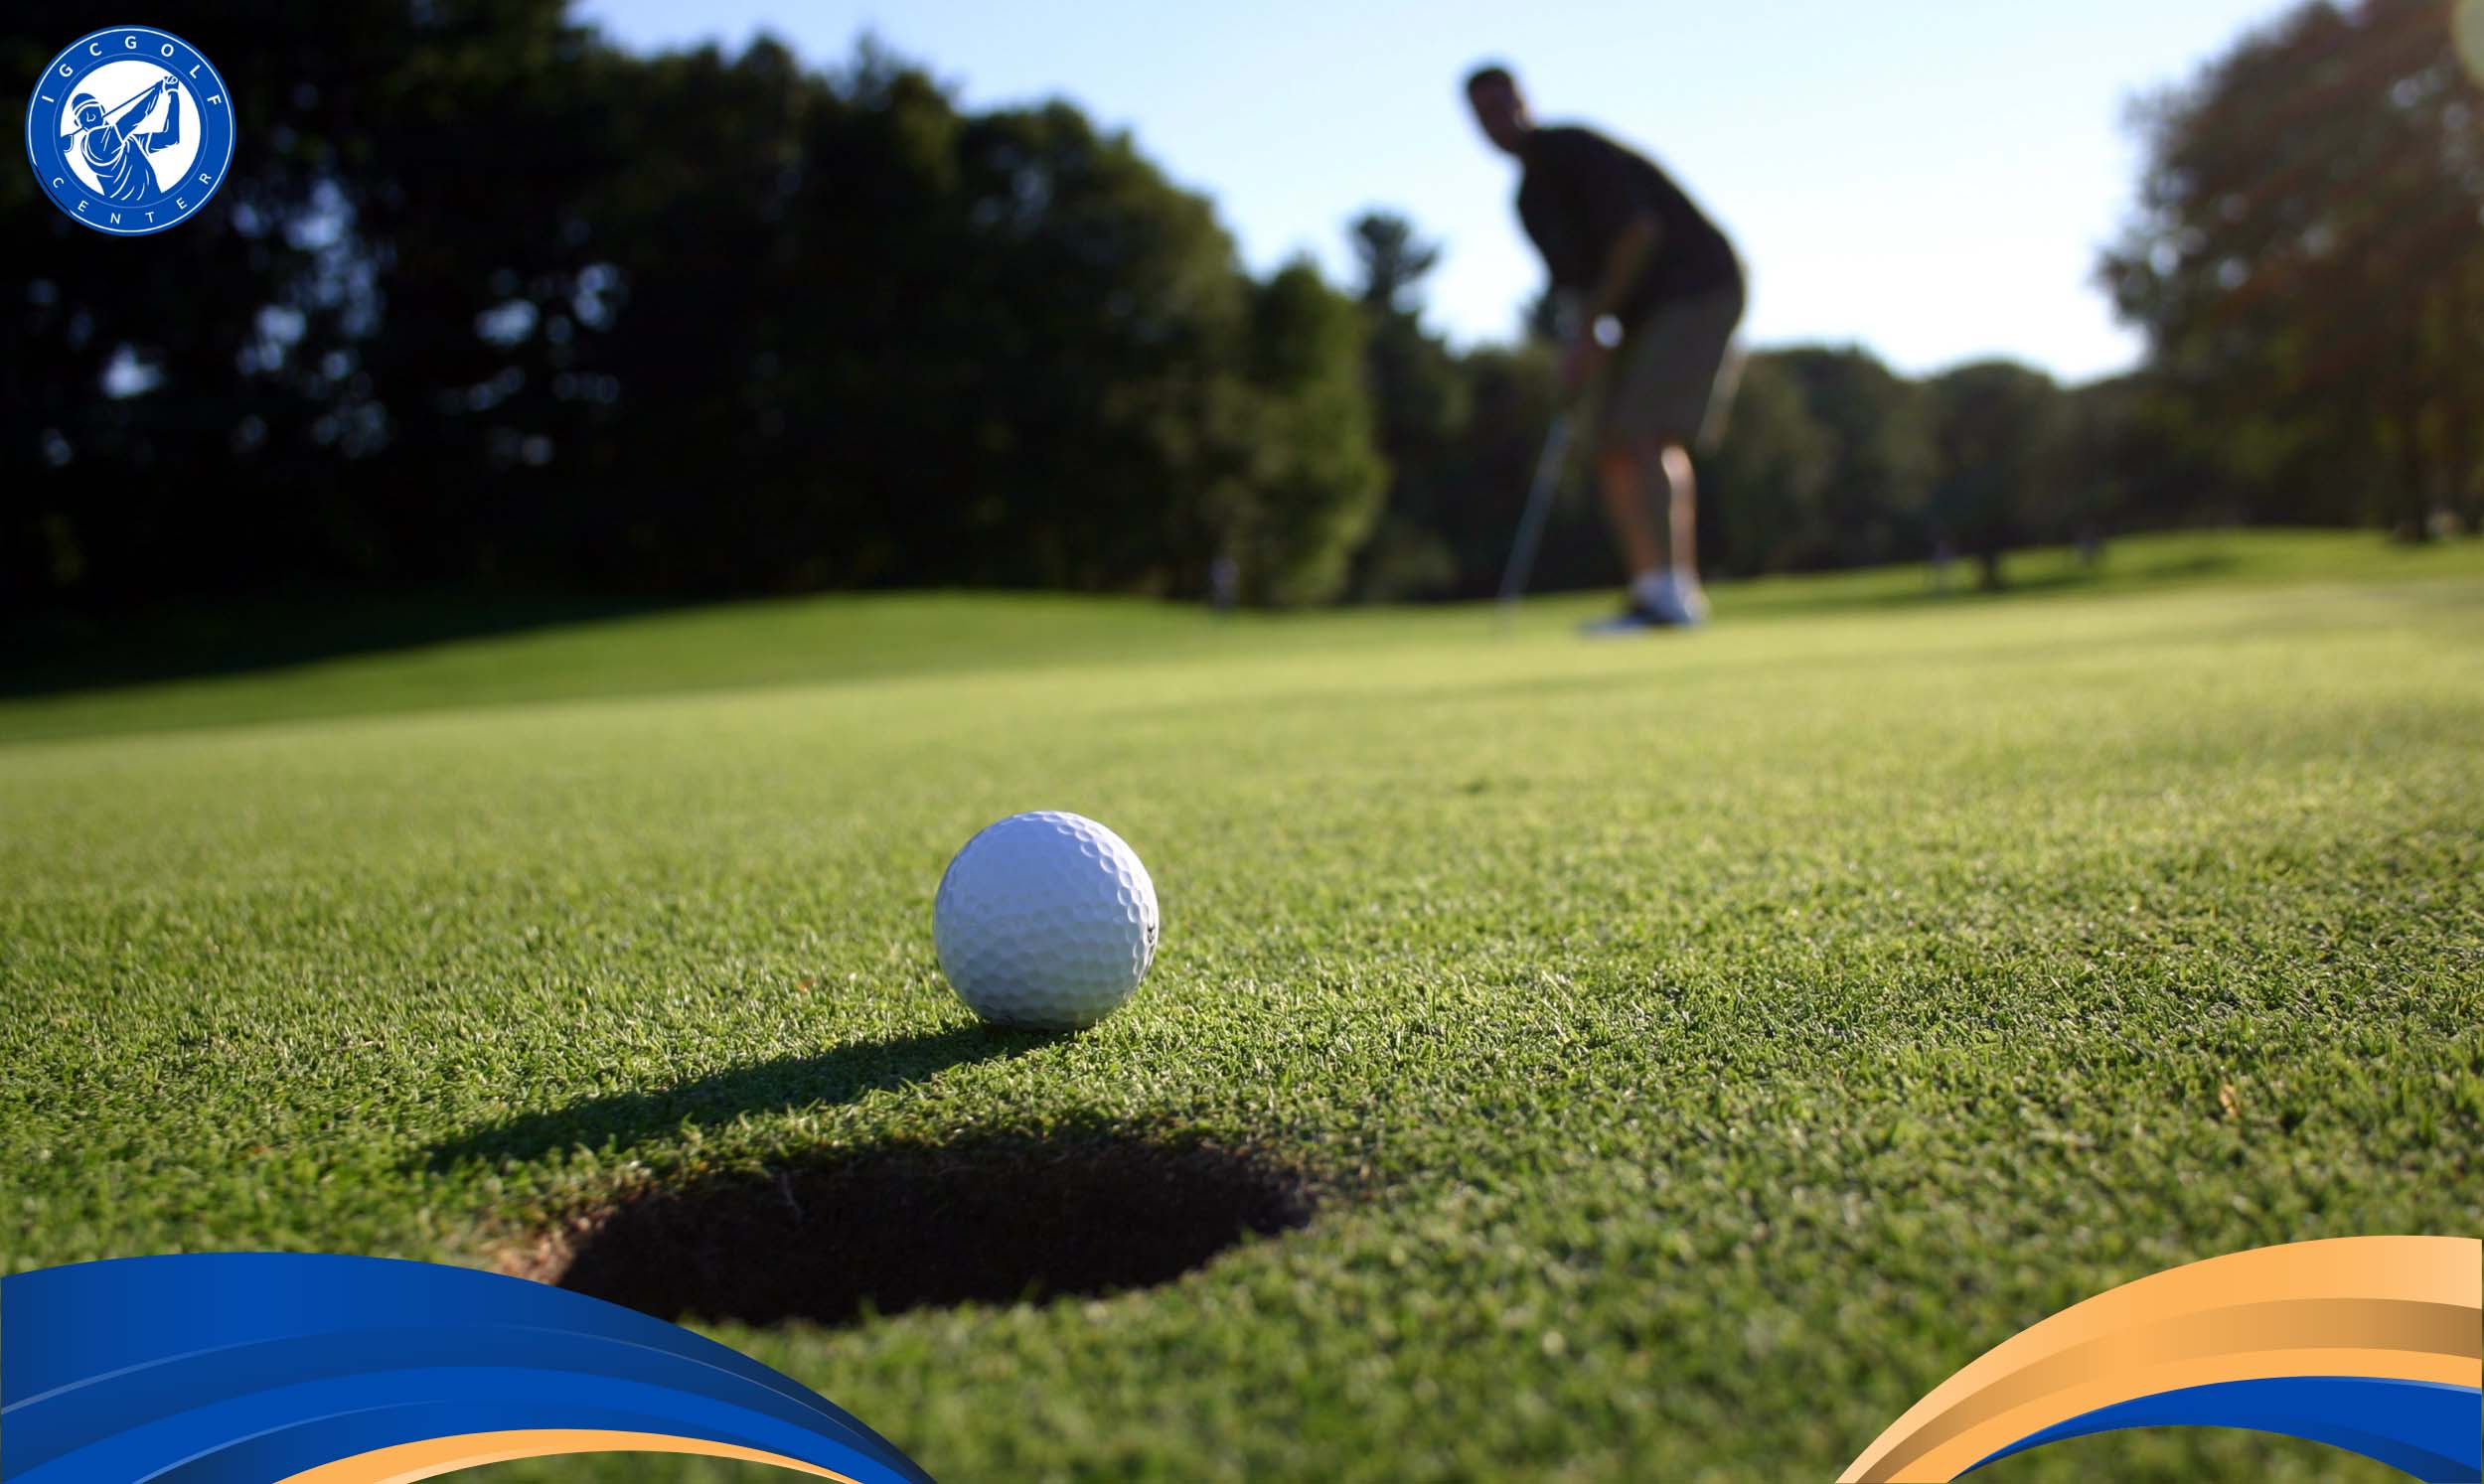 Tên gọi tee time trong Golf được hiểu là gì?